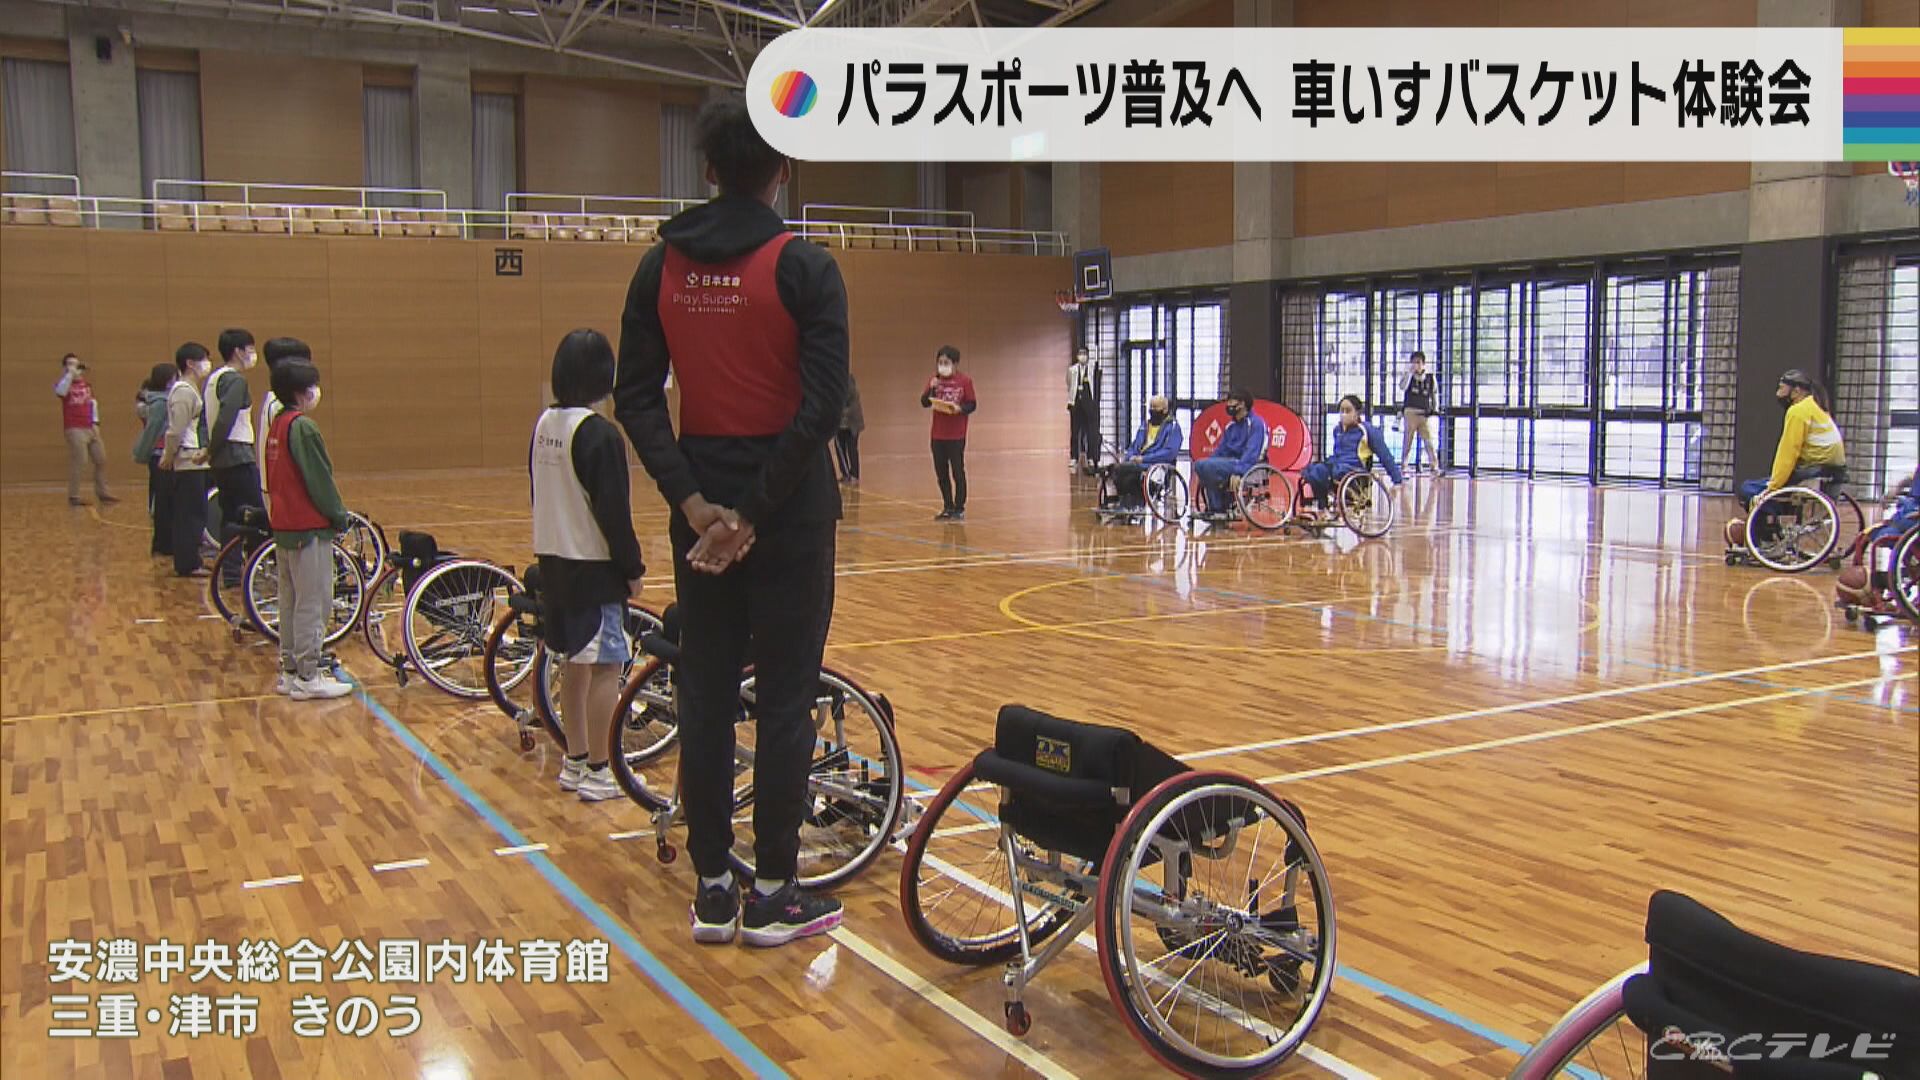 「パラスポーツへの理解を深めたい」三重・津市で車いすバスケットボールの体験会が行われる